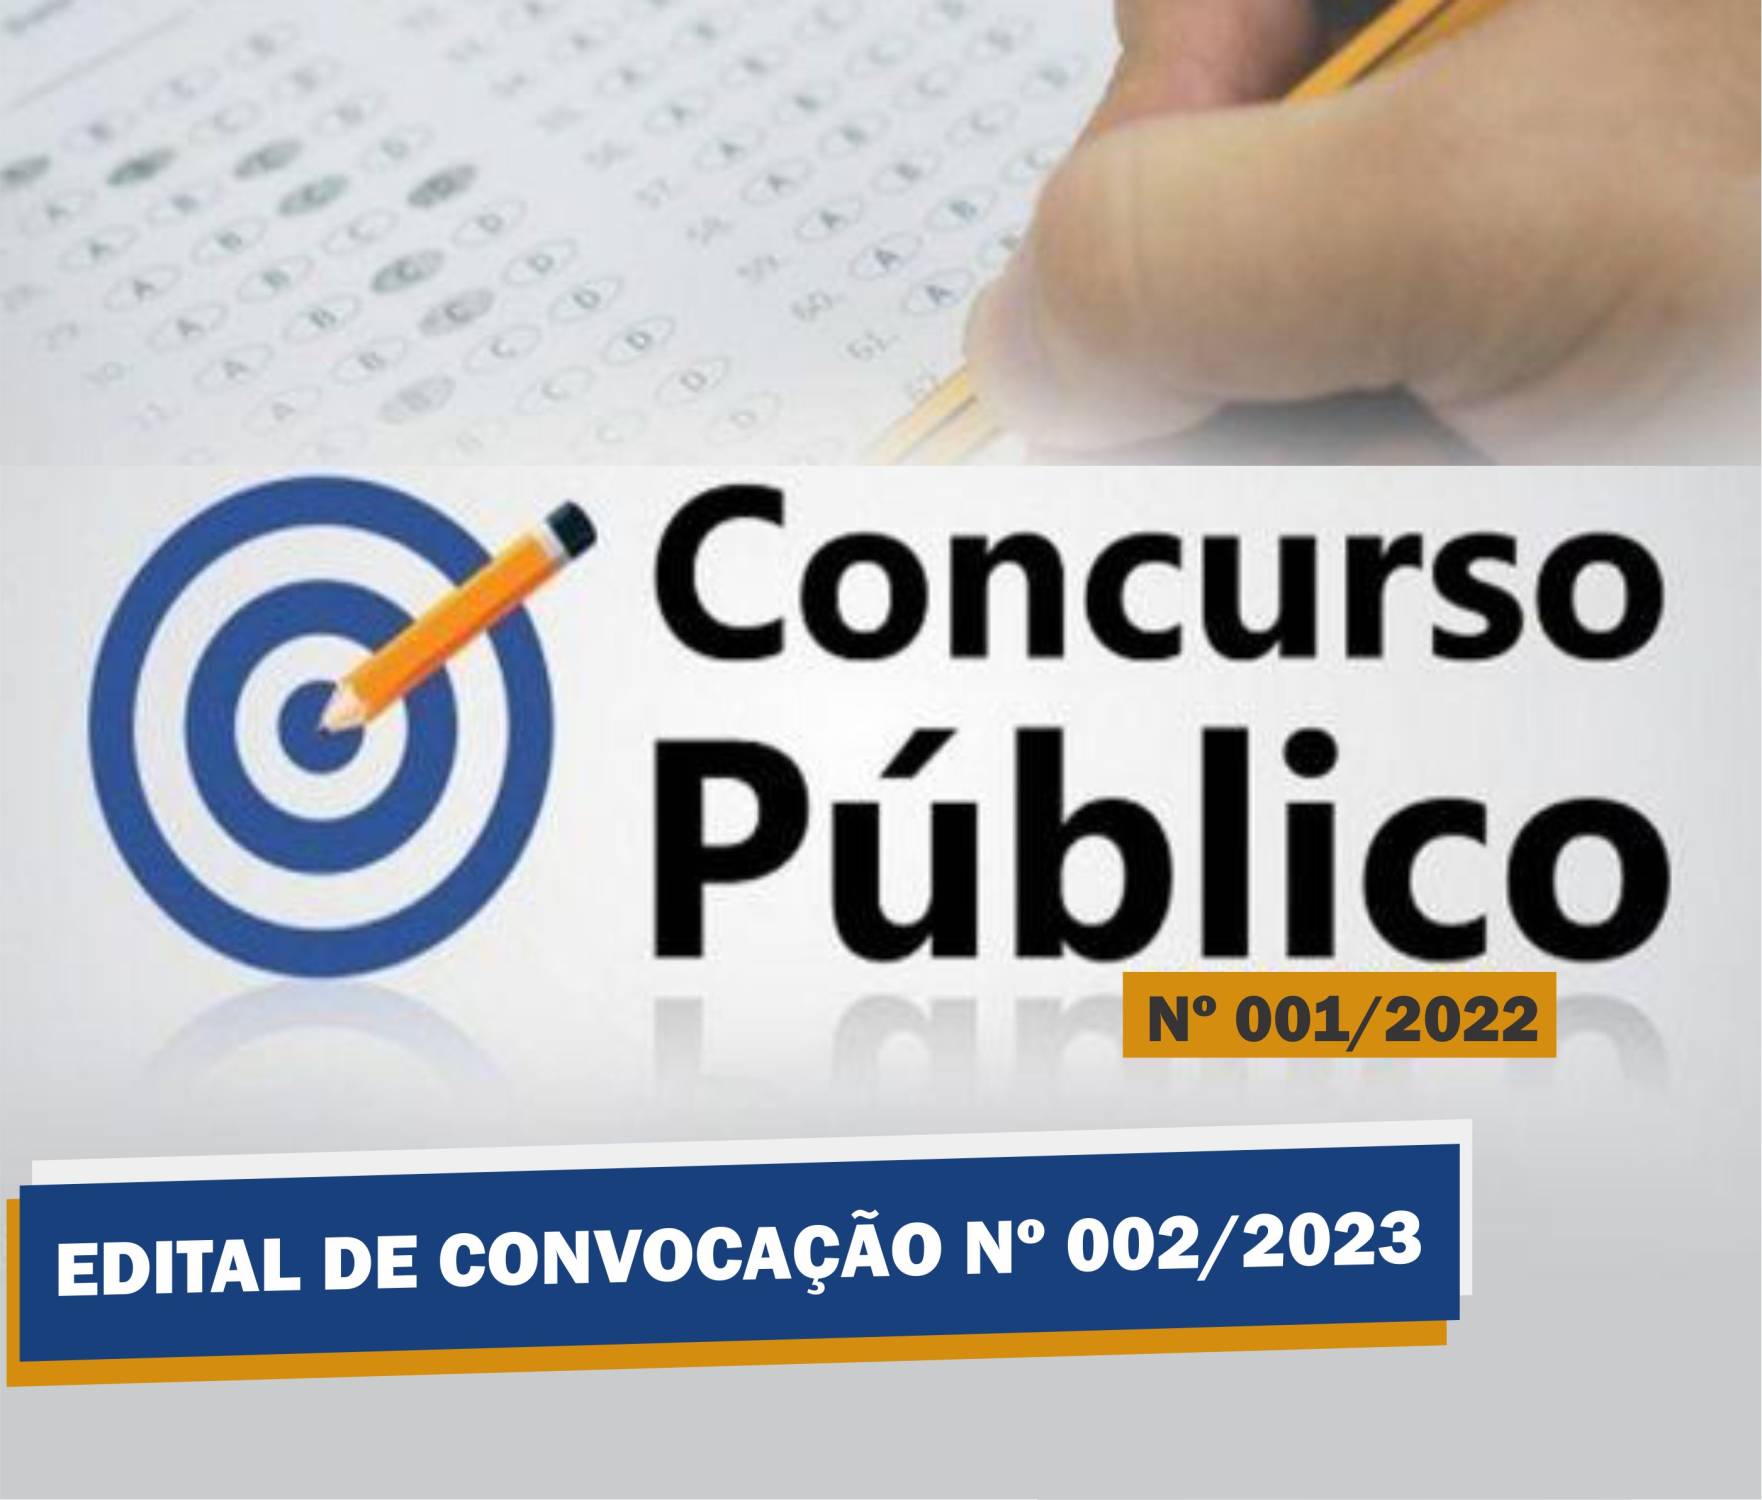 Edital de Convocação Nº 002 - Concurso Público Nº 001/2022